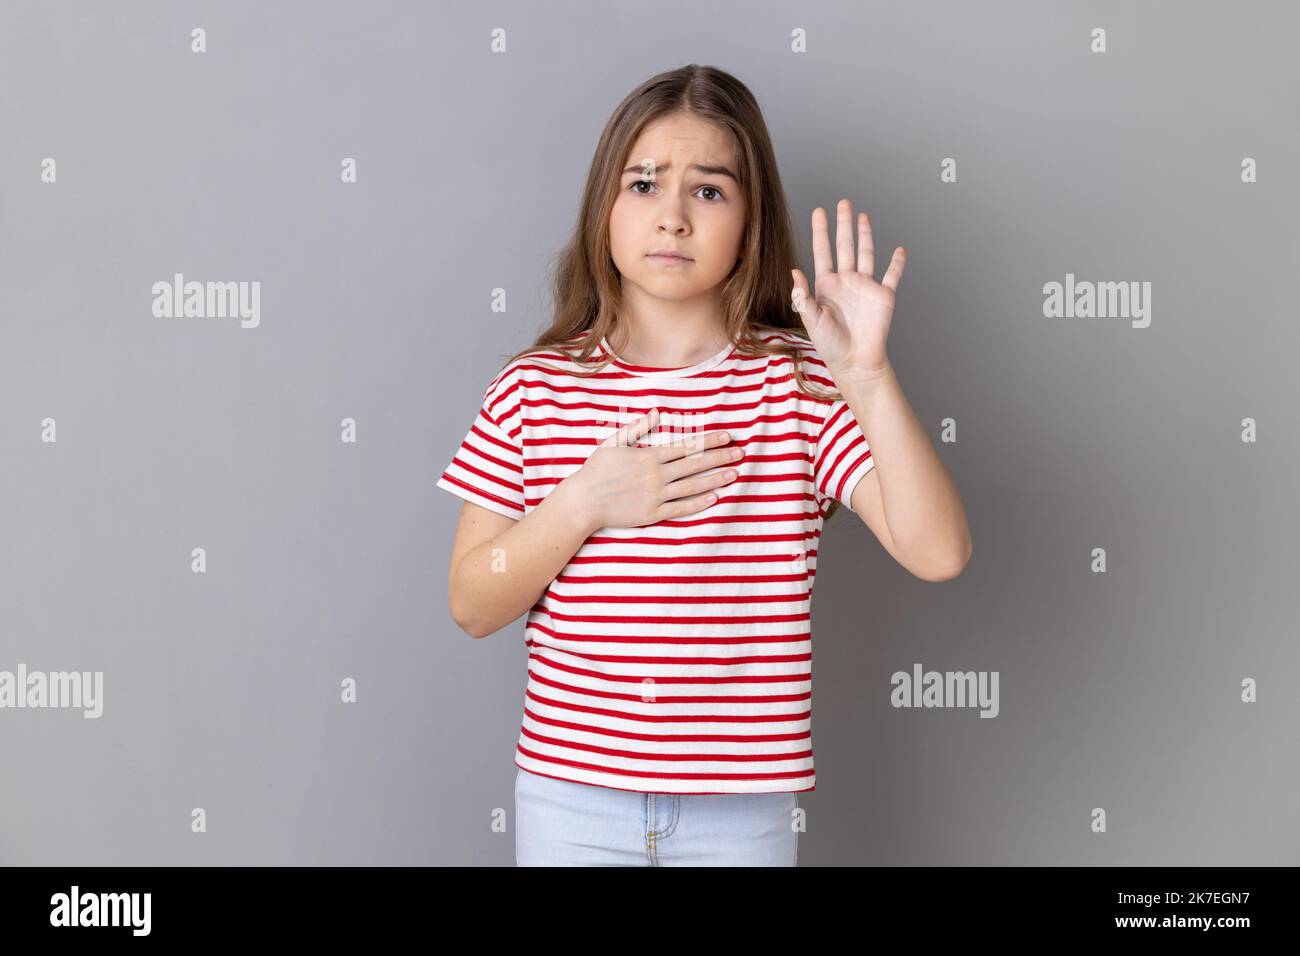 Porträt eines ernsthaften patriotischen kleinen Mädchens mit gestreiftem T-Shirt, das Hand am Herzen hält und die Wahrheit, Ehre und Gewissen sagt. Innenaufnahme des Studios isoliert auf grauem Hintergrund. Stockfoto